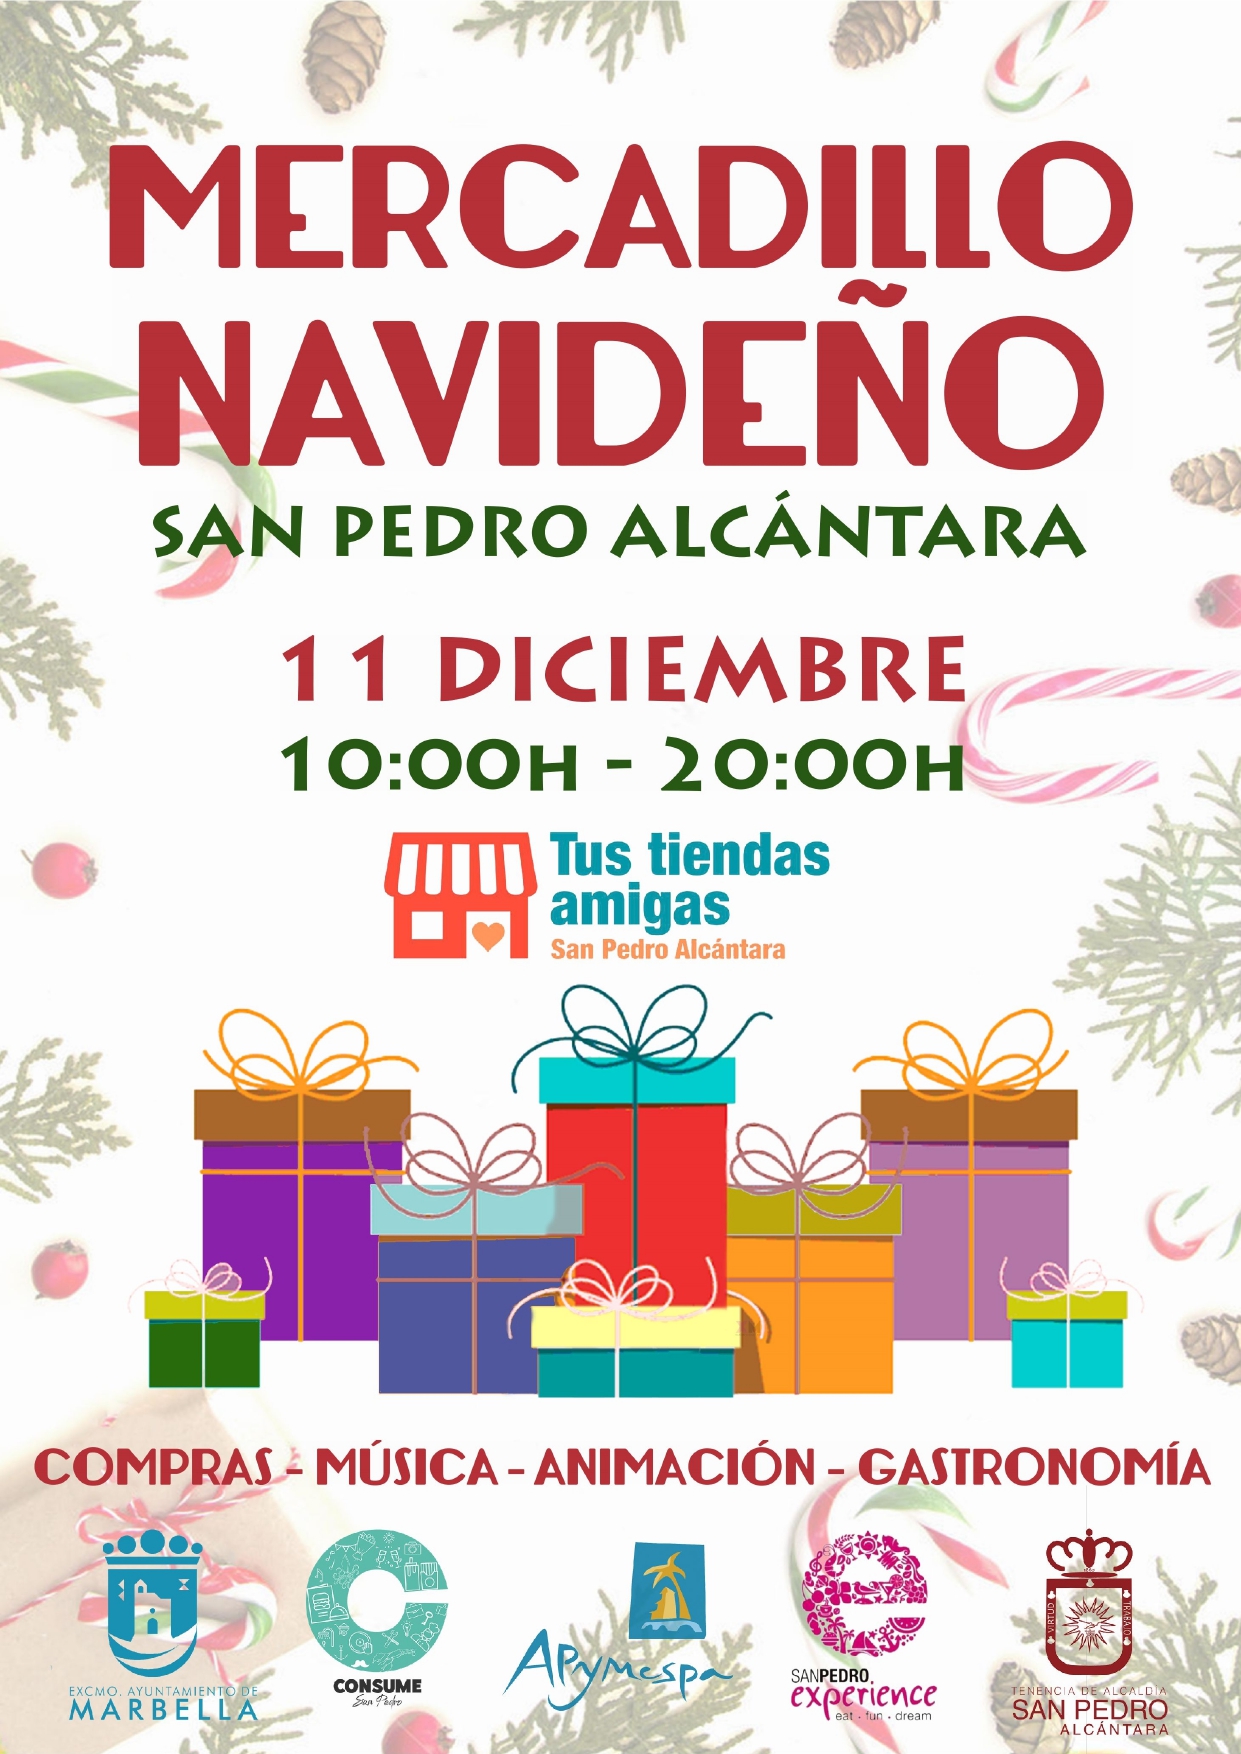 San Pedro Alcántara celebra este sábado una nueva edición del Mercadillo Navideño tras el parón por la pandemia con la participación de 60 comercios locales